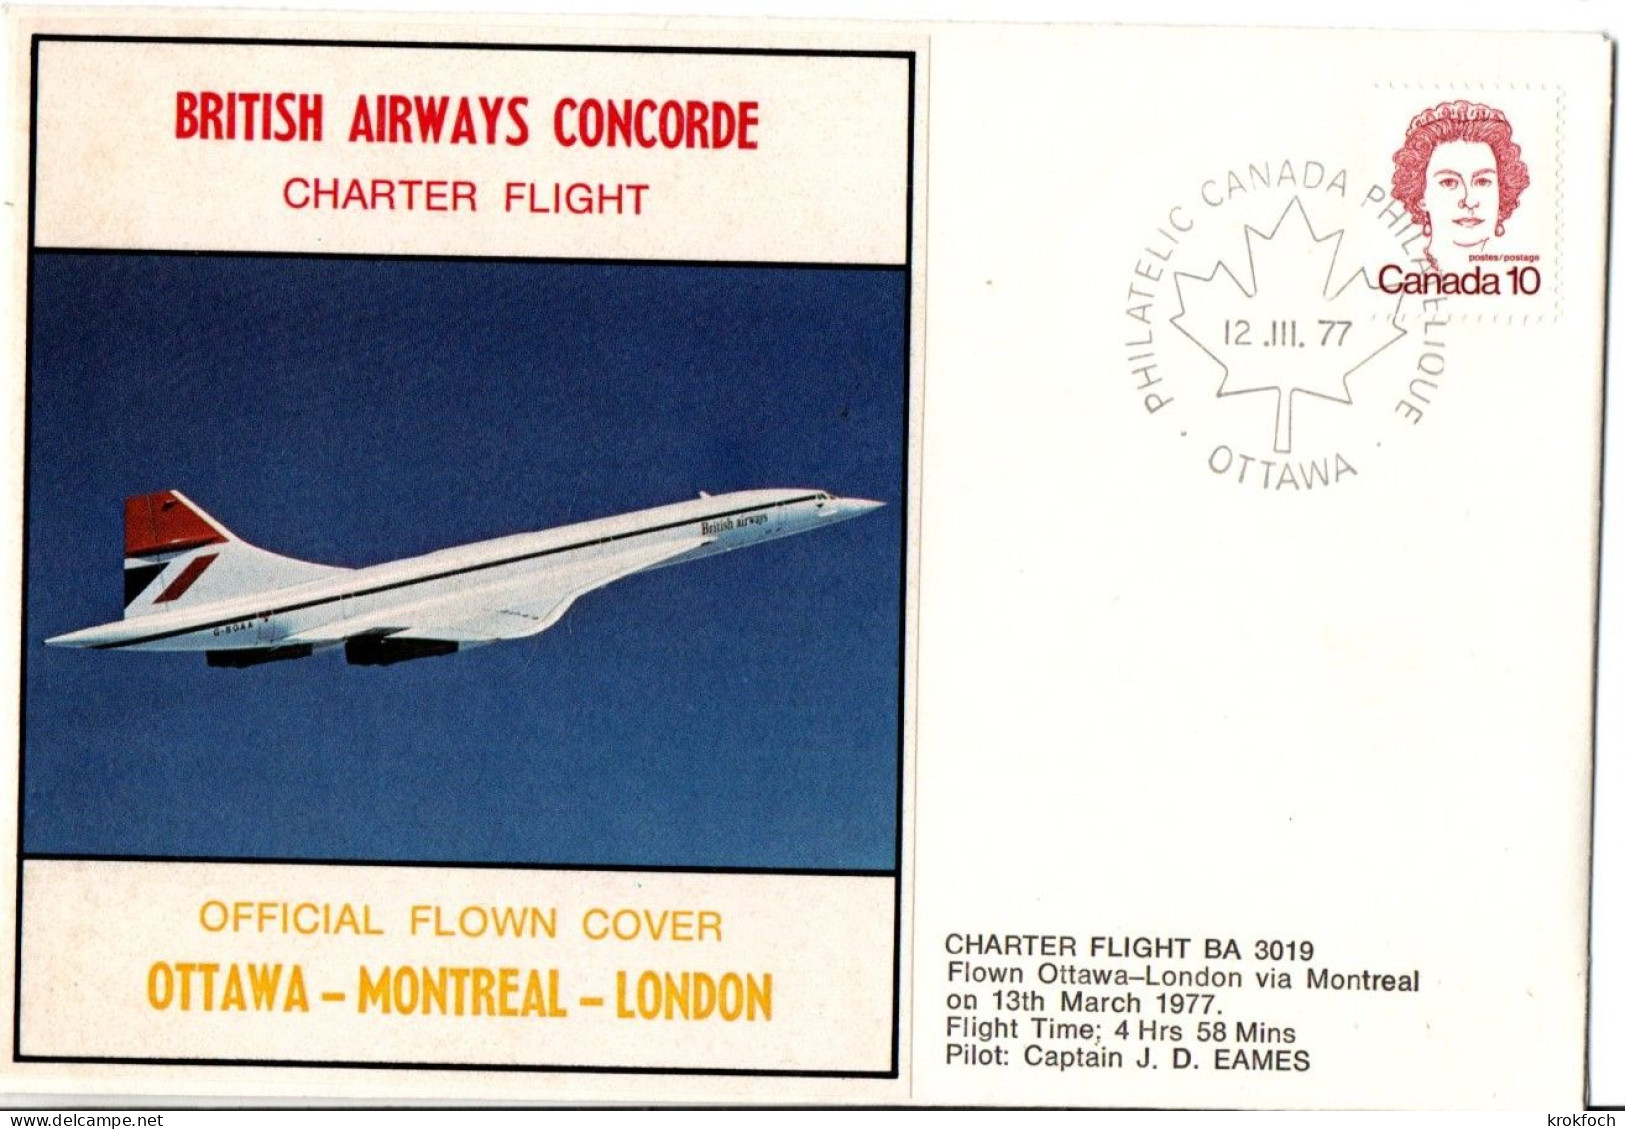 Concorde BA 1977 - Ottawa Montréal London - Charter Flight - First Flight Covers